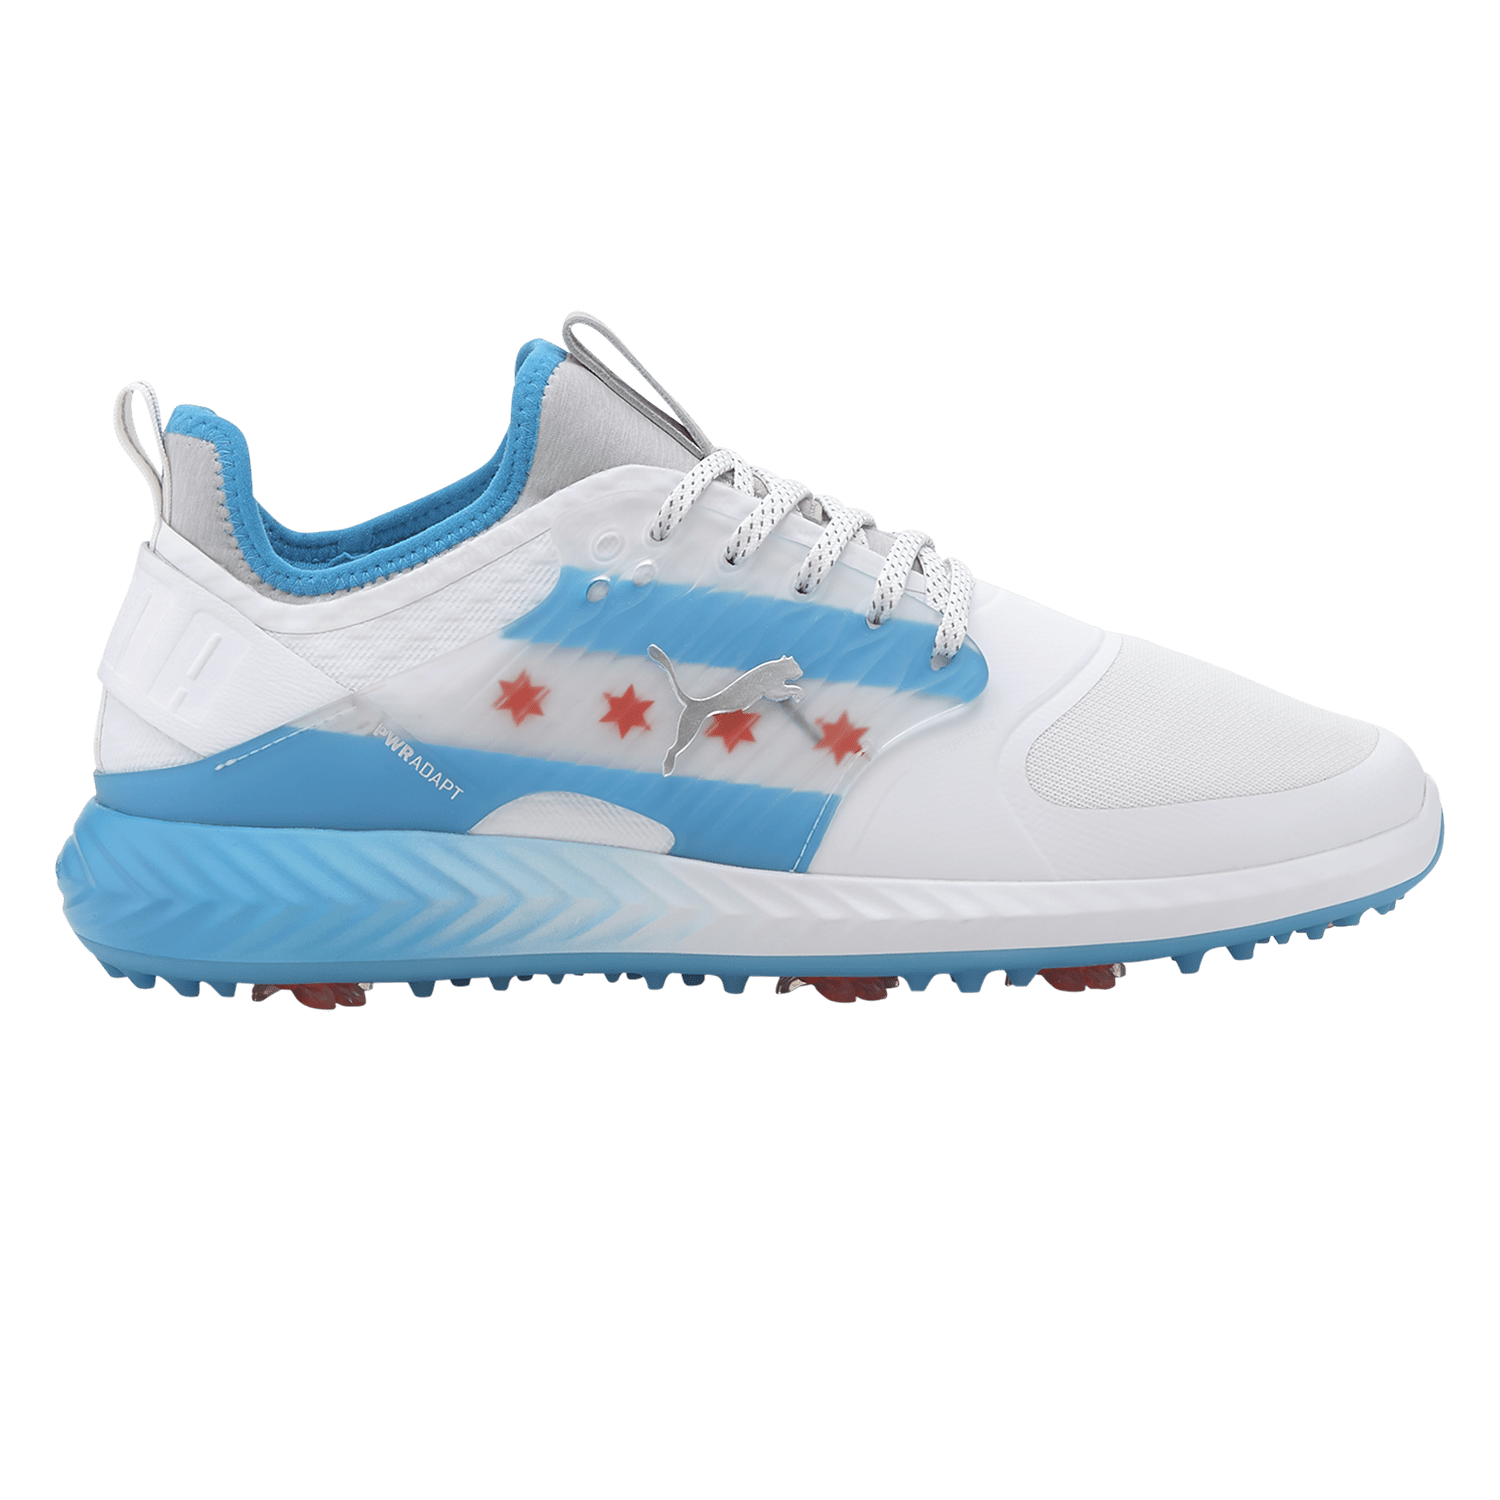 puma ignite golf shoes blue